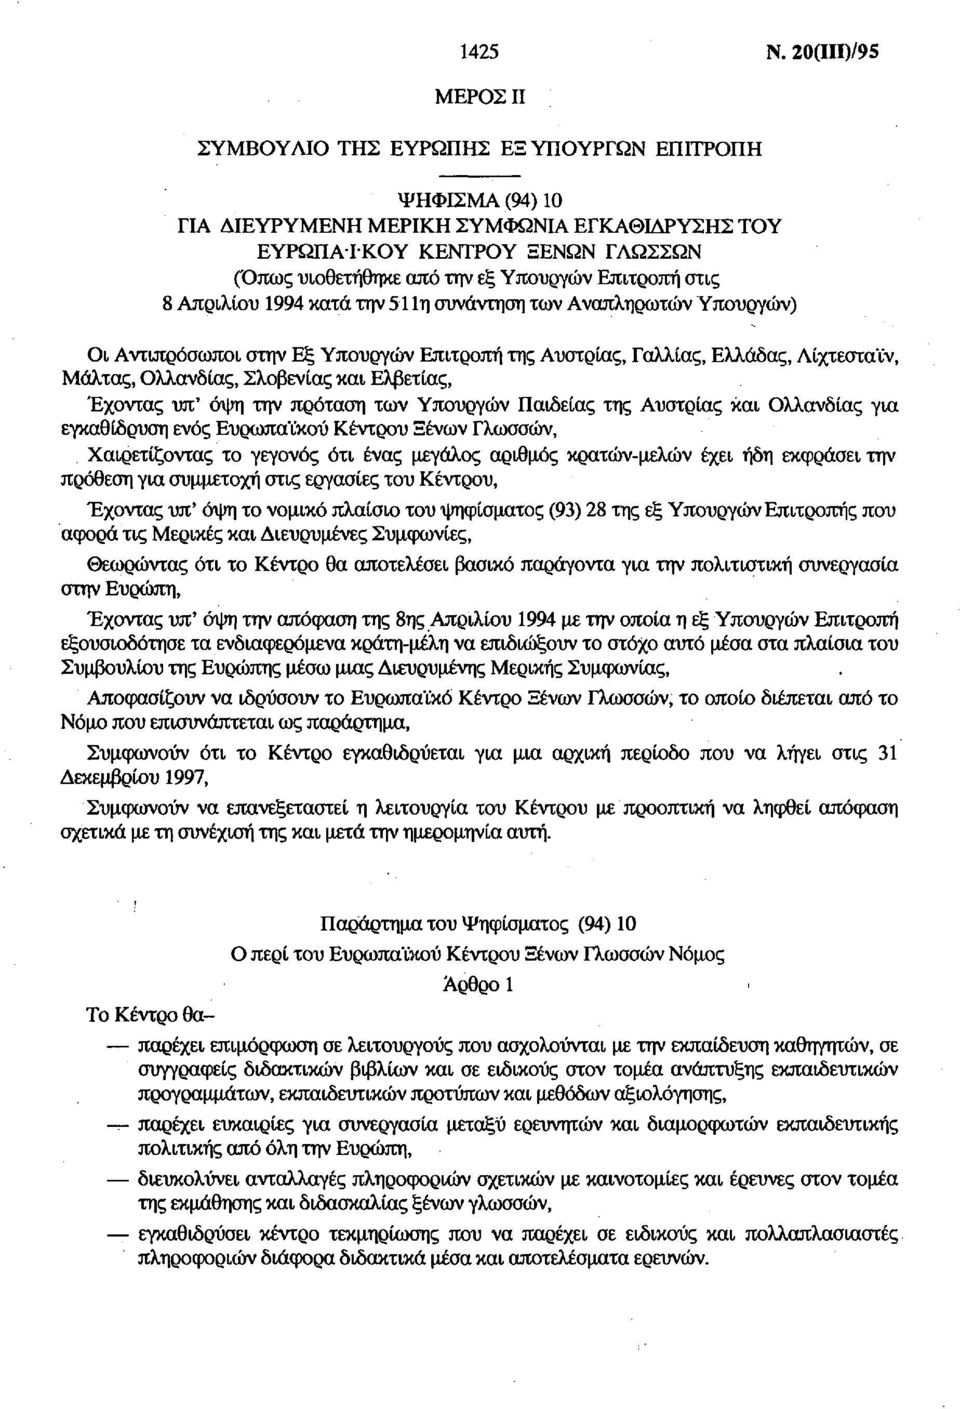 Επιτροπή στις 8 Απριλίου 1994 κατά την 511η συνάντηση των Αναπληρωτών Υπουργών) Οι Αντιπρόσωποι στην Εξ Υπουργών Επιτροπή της Αυστρίας, Γαλλίας, Ελλάδας, Λίχτεσταϊν, Μάλτας, Ολλανδίας, Σλοβενίας και